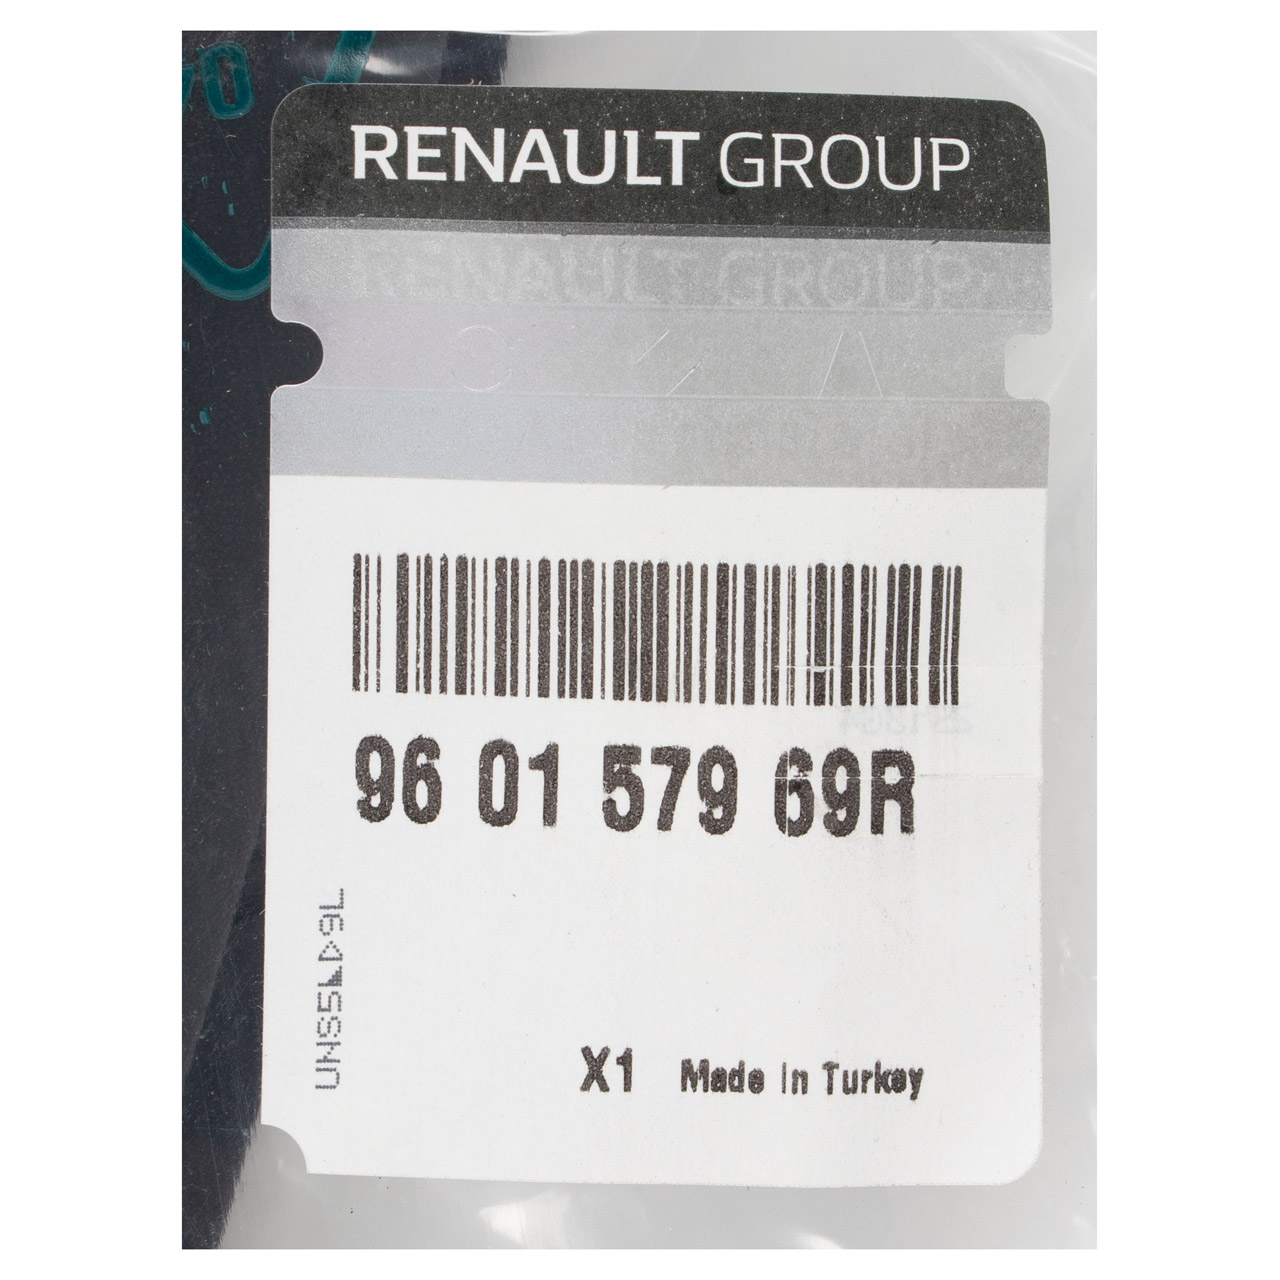 ORIGINAL Renault Spoiler Frontstoßstange Clio 4 BH / Grandtour KH Vorderachse 960157969R